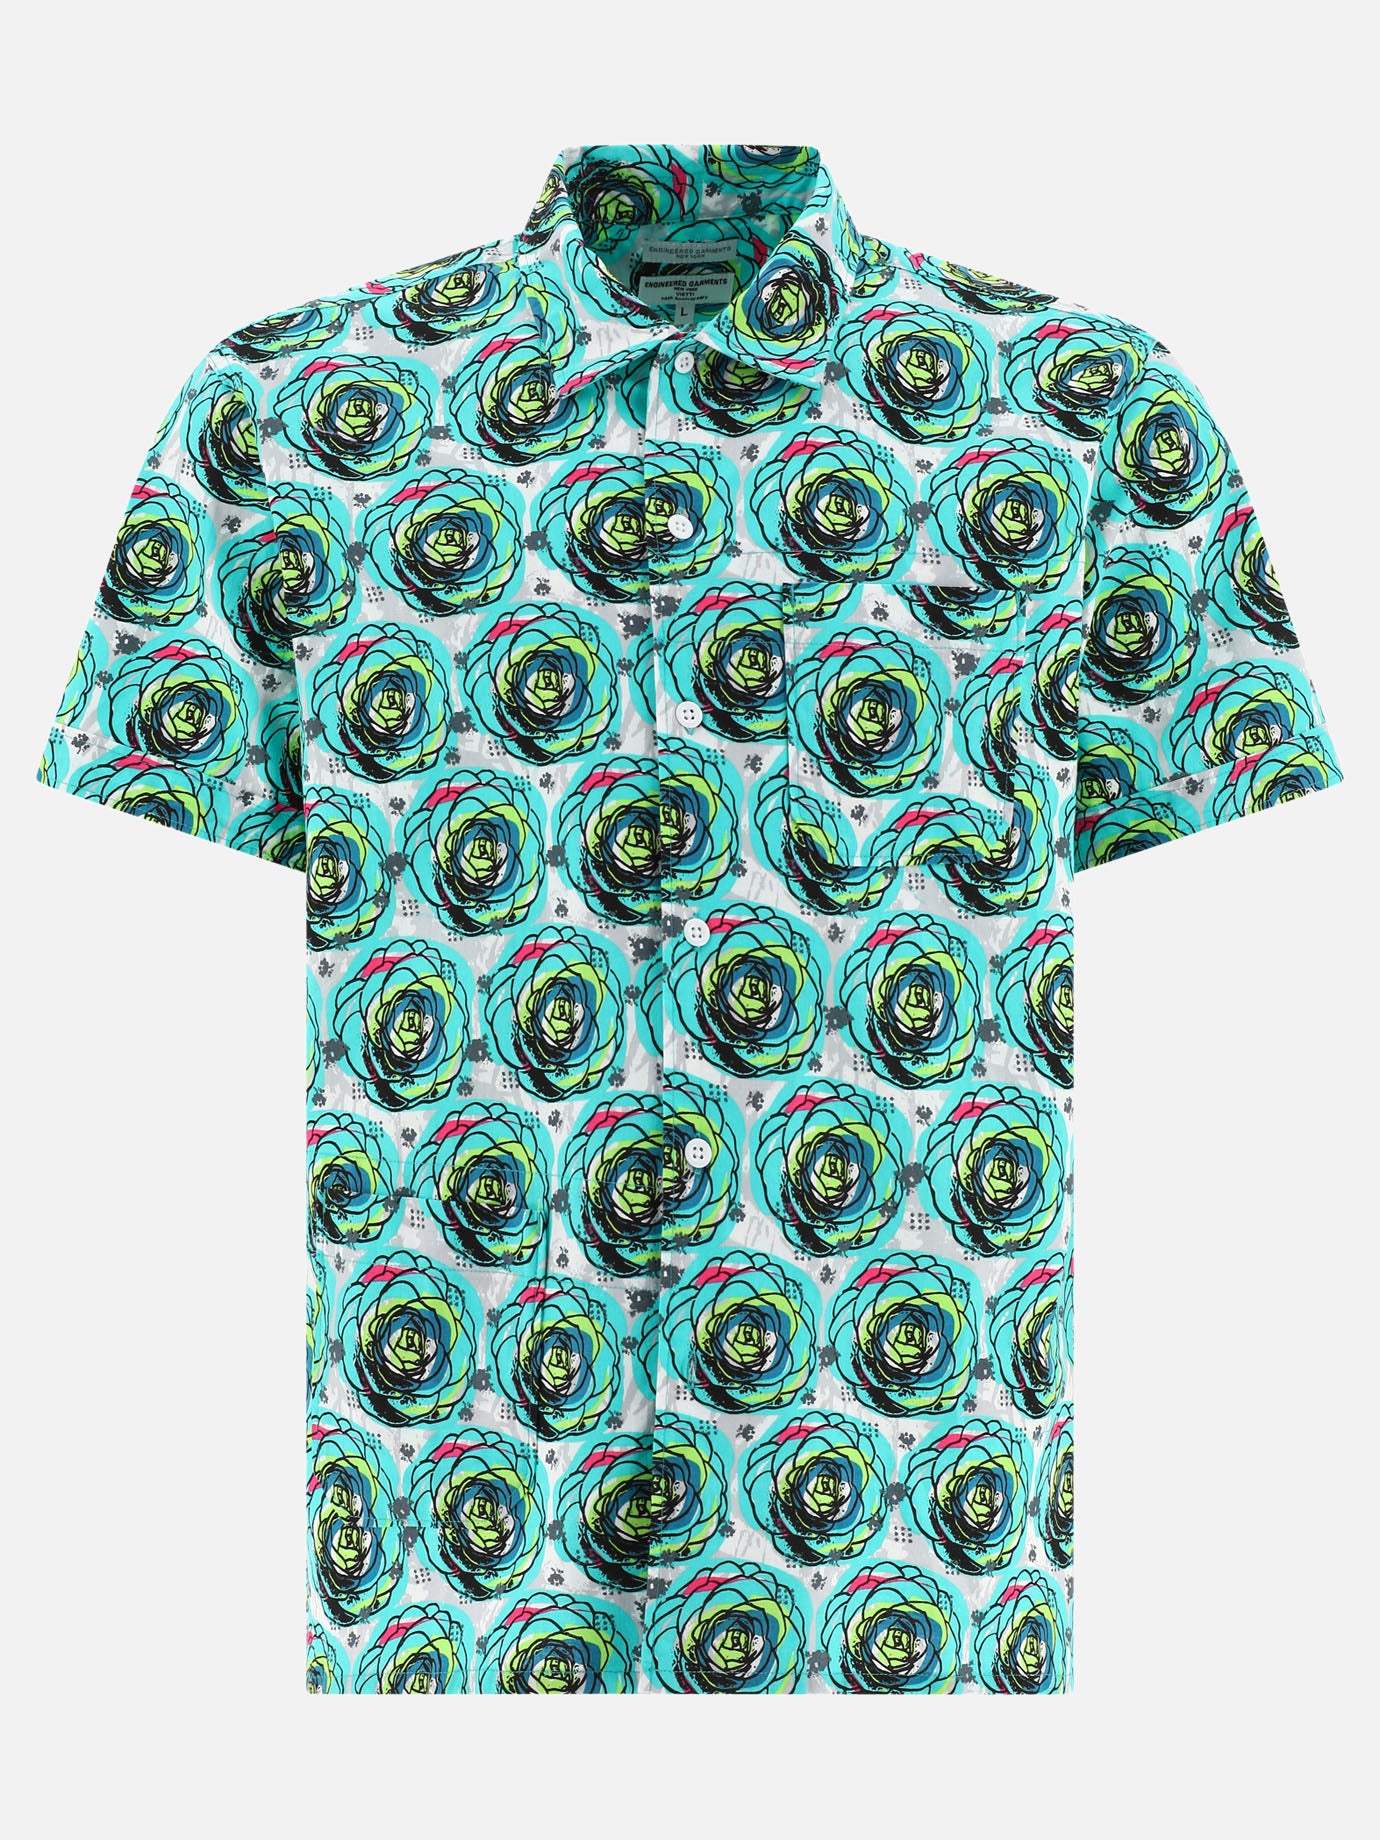 "Engineered Garments x VIETTI" shirt